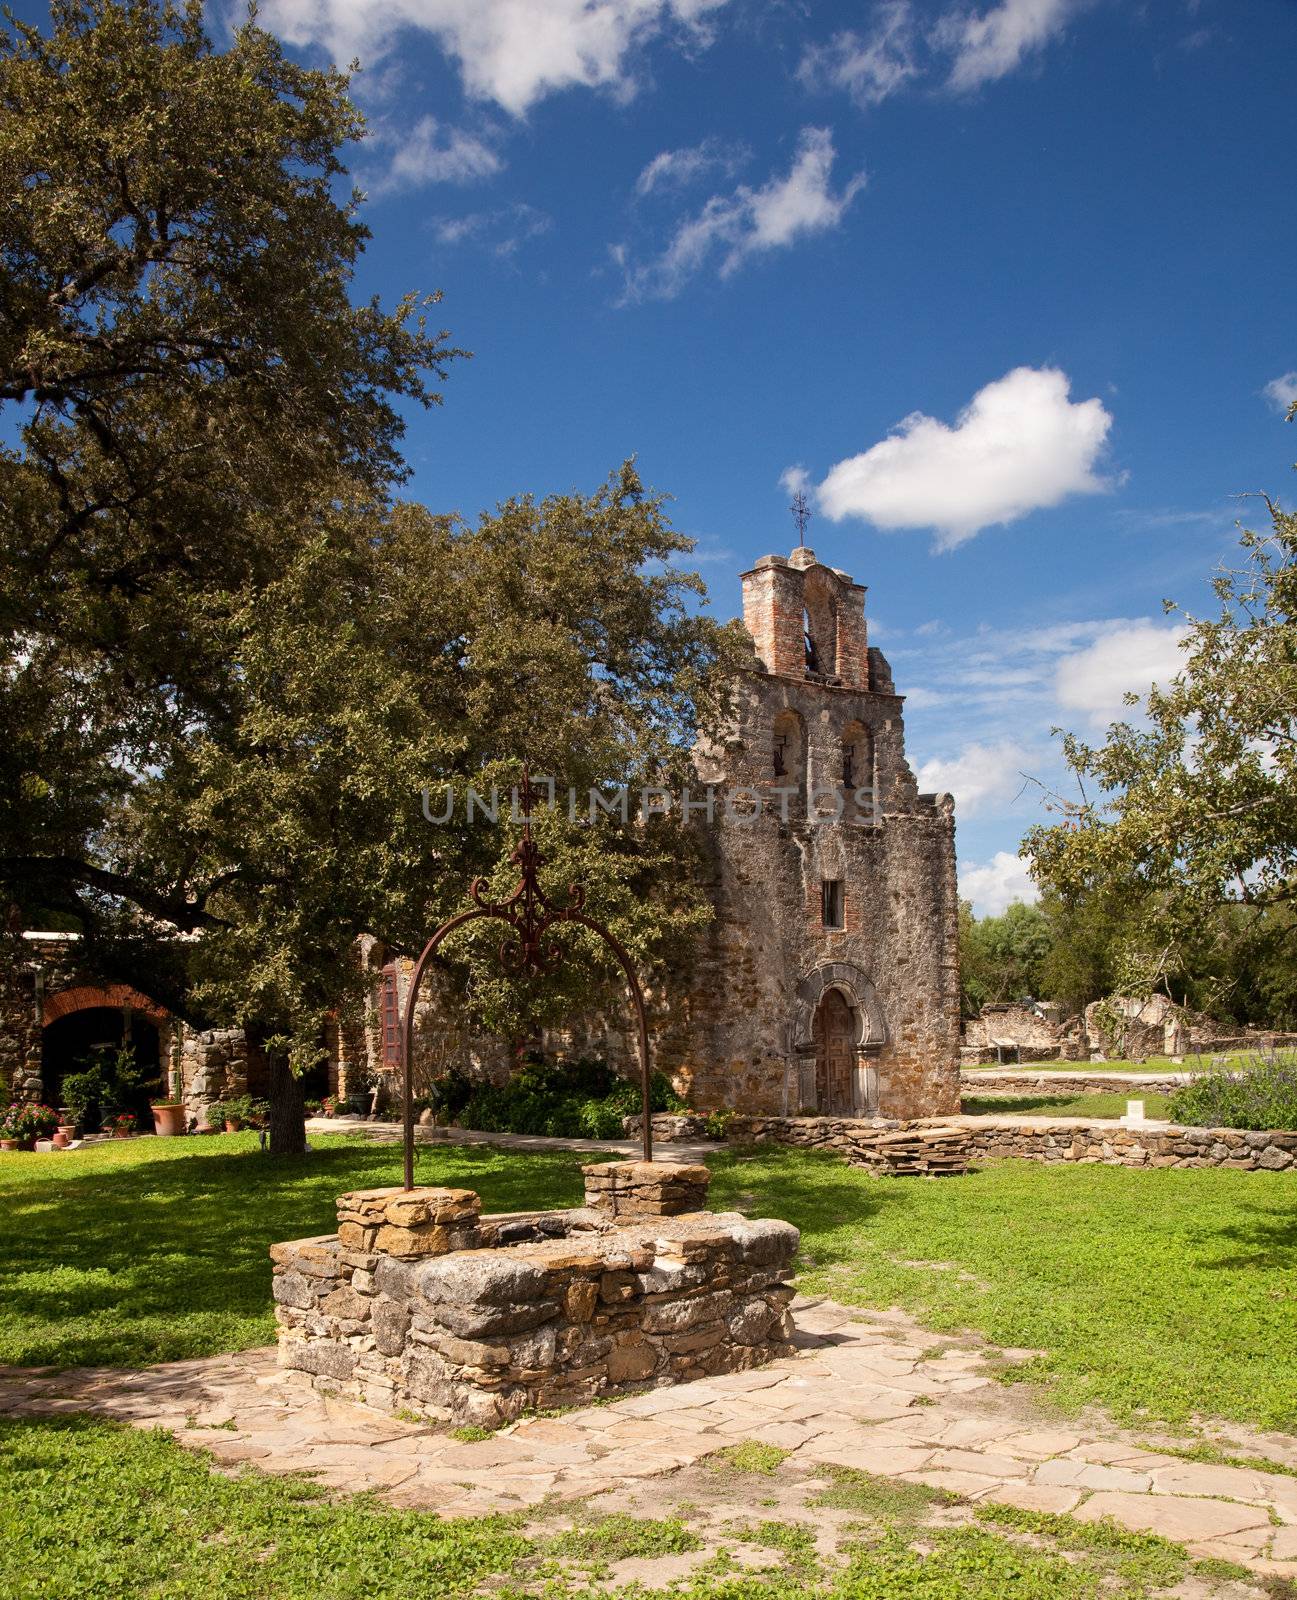 San Antonio Mission Espada in Texas by steheap